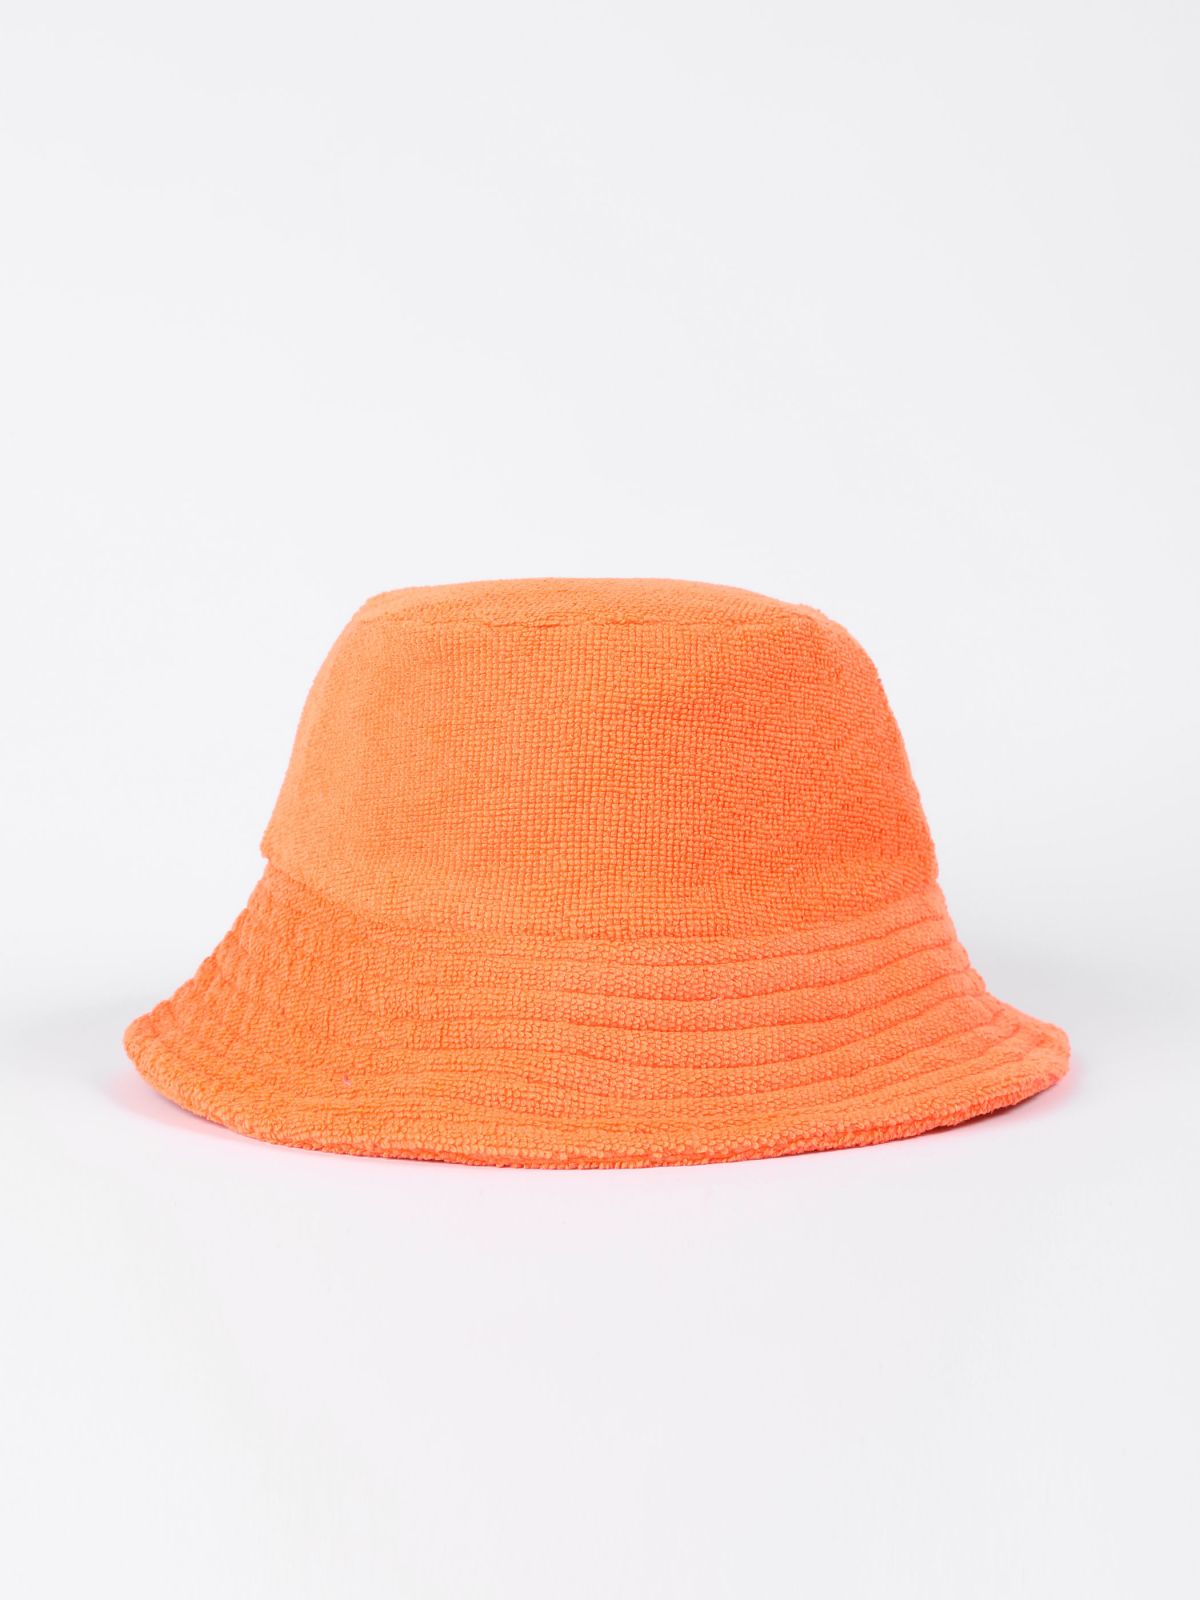  כובע באקט מגבת / Sapir Avisror של TX COLLAB